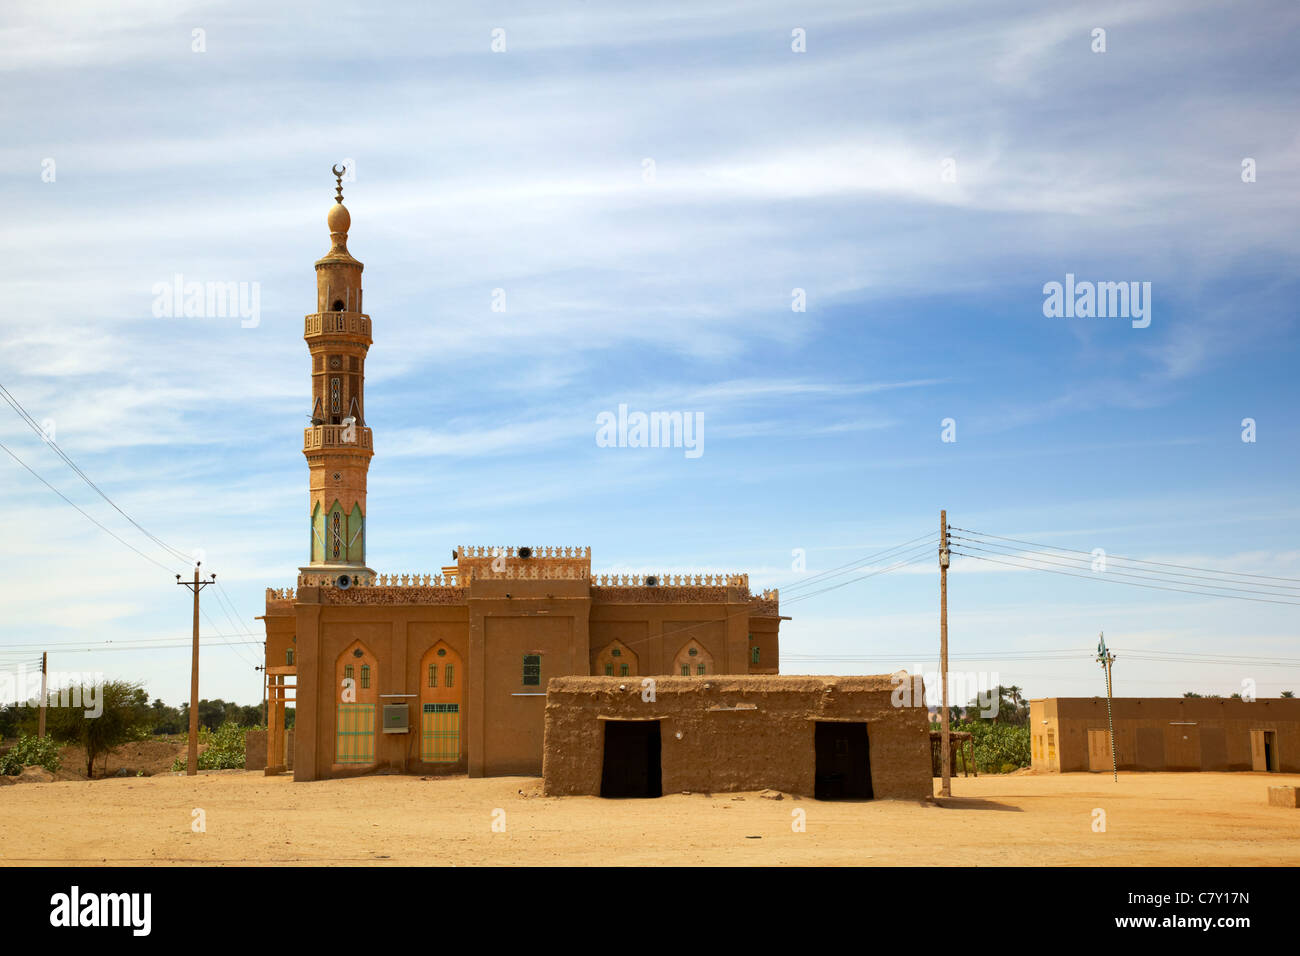 Mosquée de Qarri, le nord du Soudan, Afrique Banque D'Images